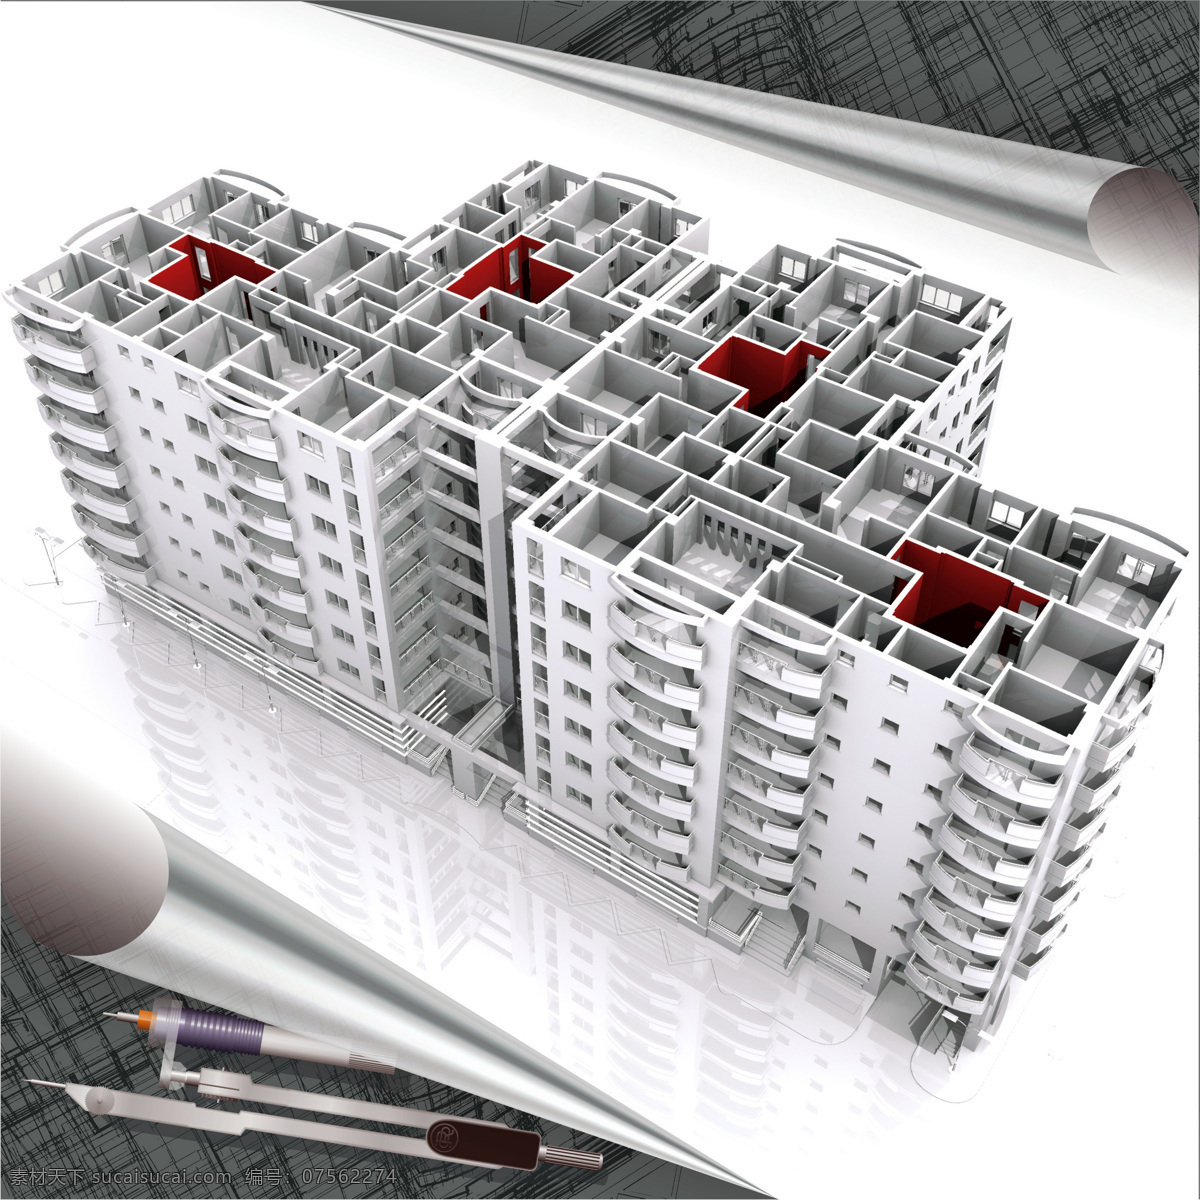 3d 楼层 建筑表现 图 三维绘图 房屋设计 3d绘图 房地产 高清图片 3d房屋 建筑群 效果图 表现图 圆规 图纸 其他类别 环境家居